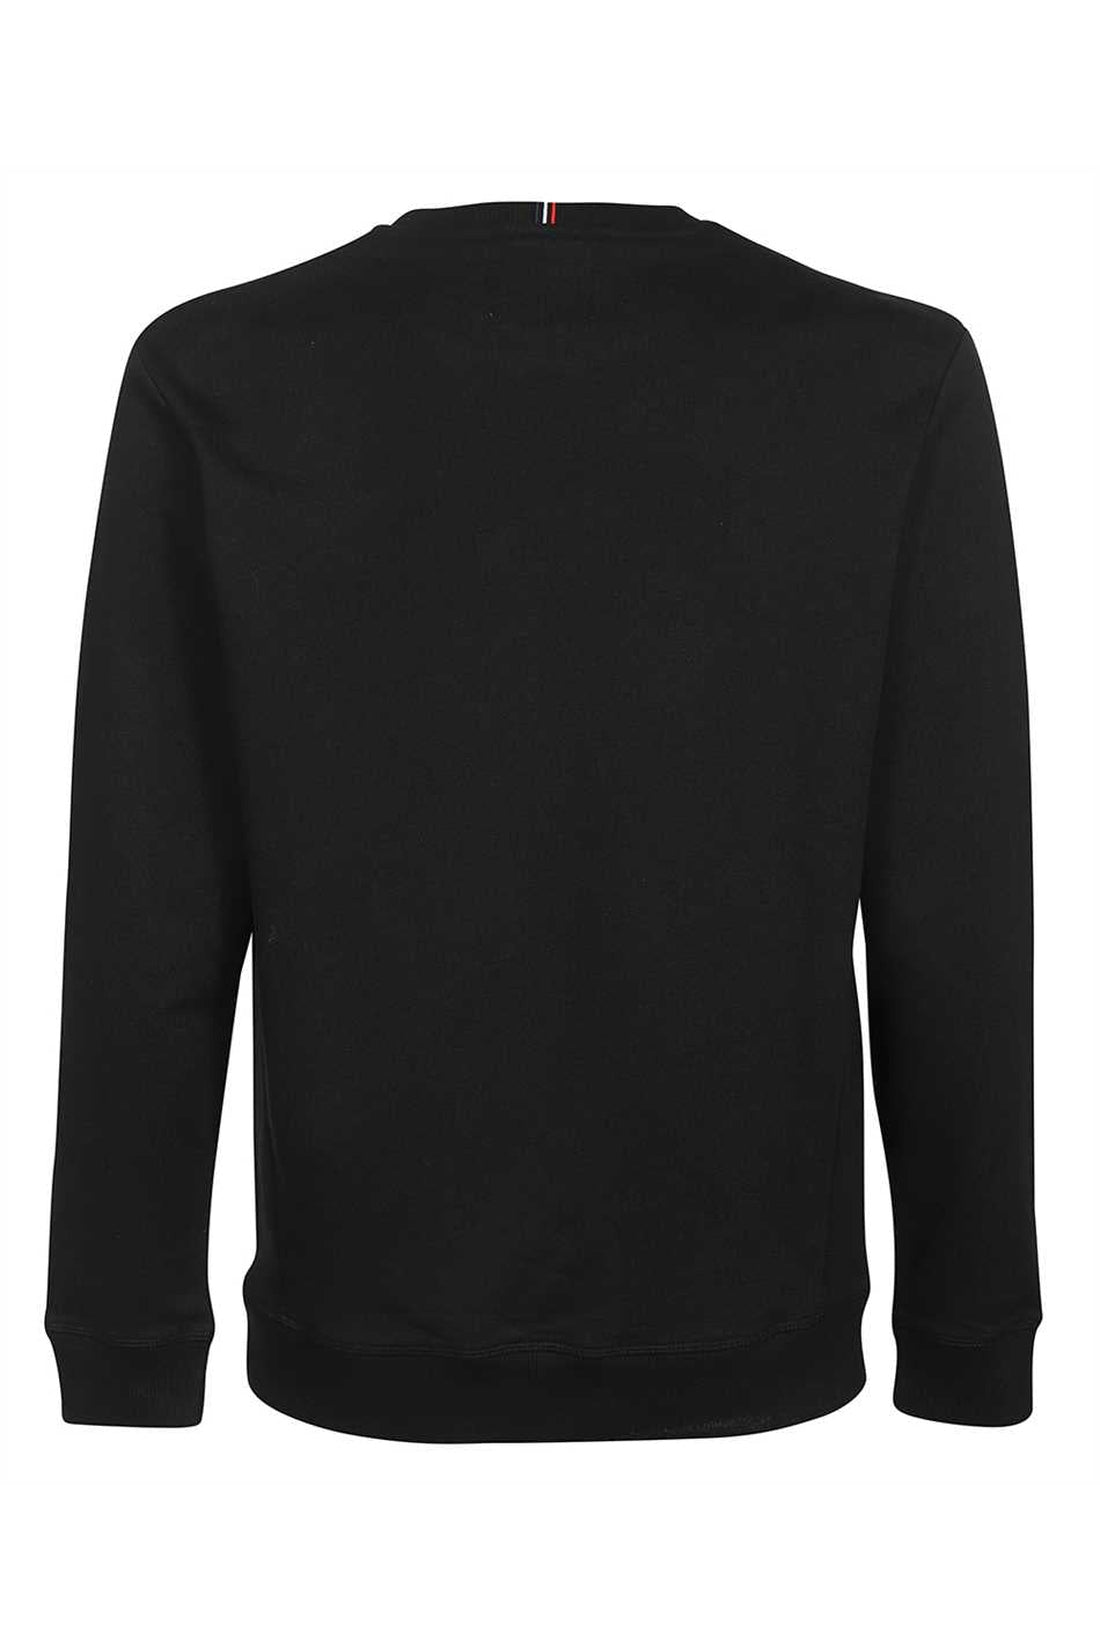 Les Deux-OUTLET-SALE-Lens cotton crew-neck sweatshirt-ARCHIVIST